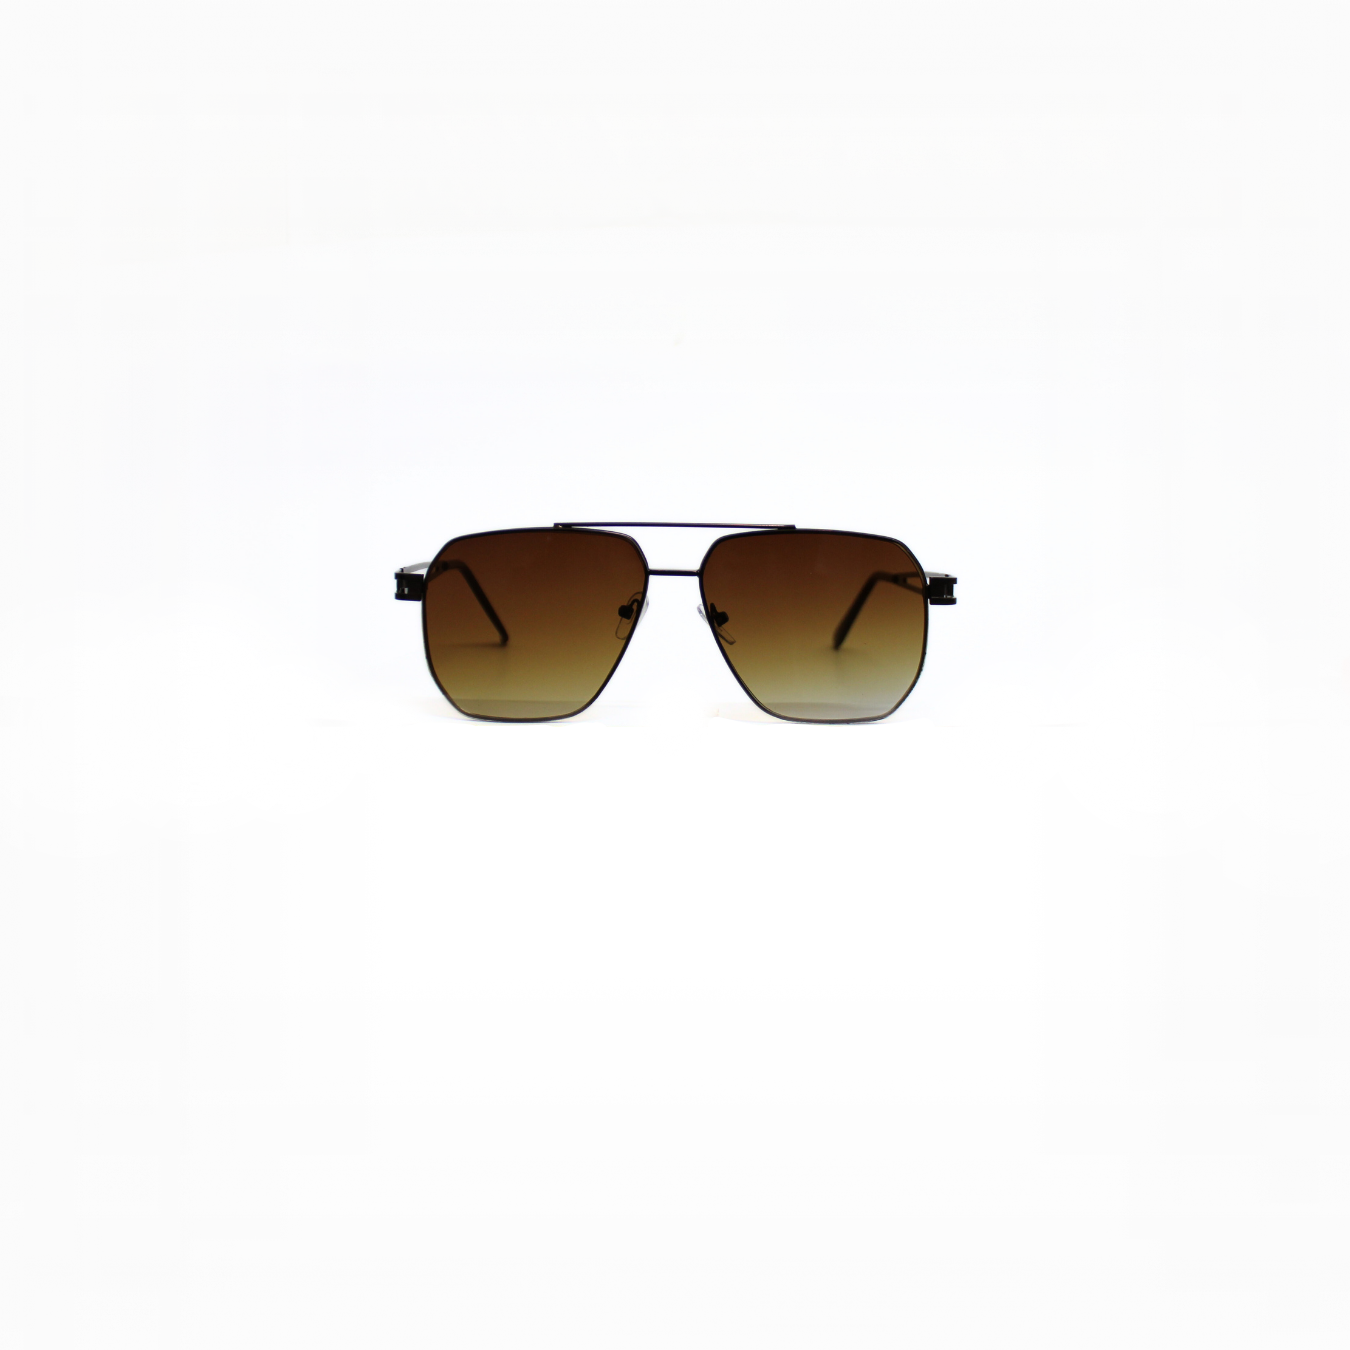 ARTHUR-I//002 I Sunglasses for Women - Specsview